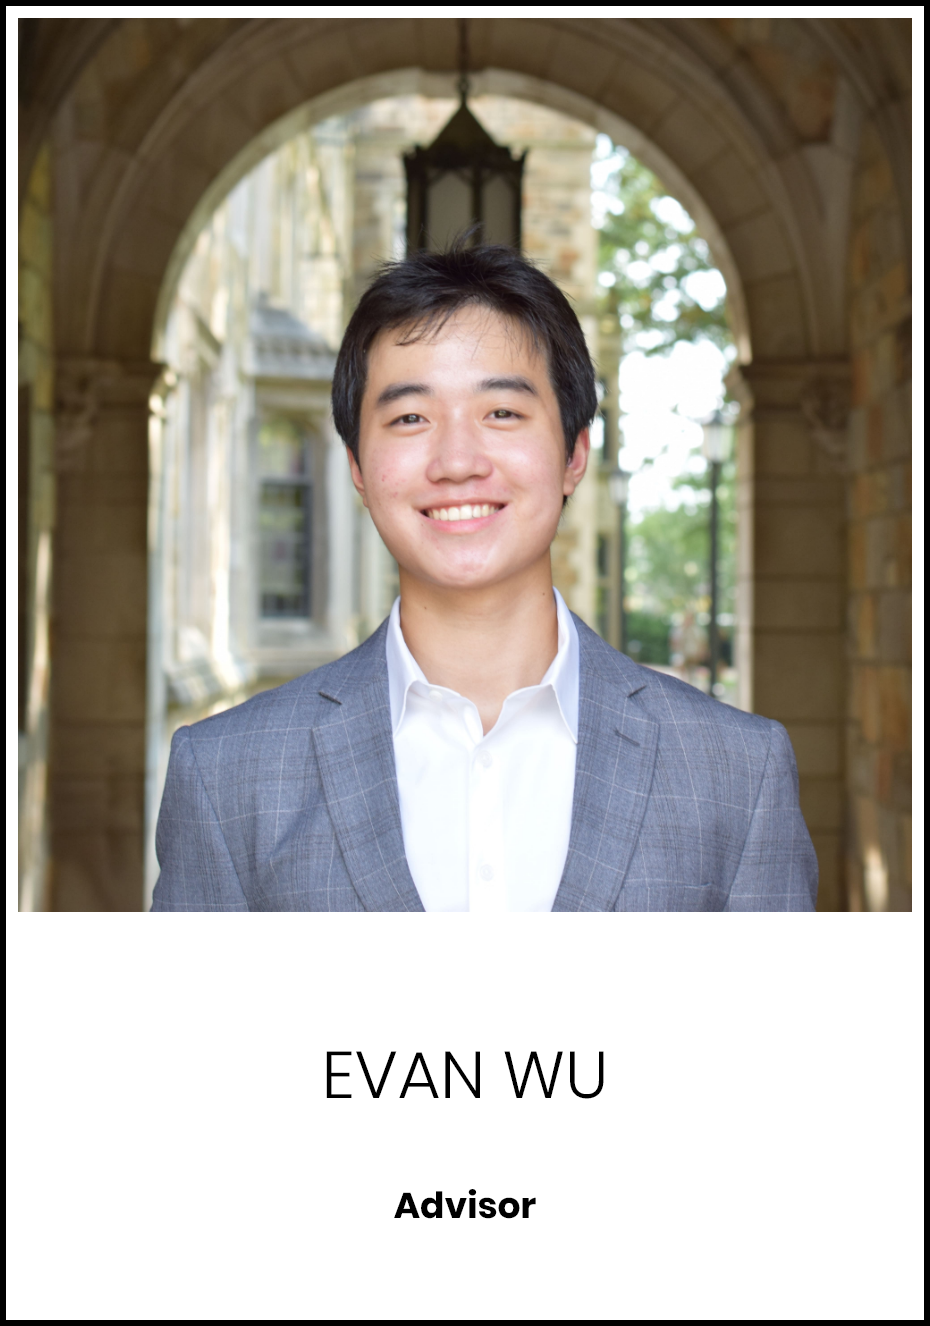 Evan Wu